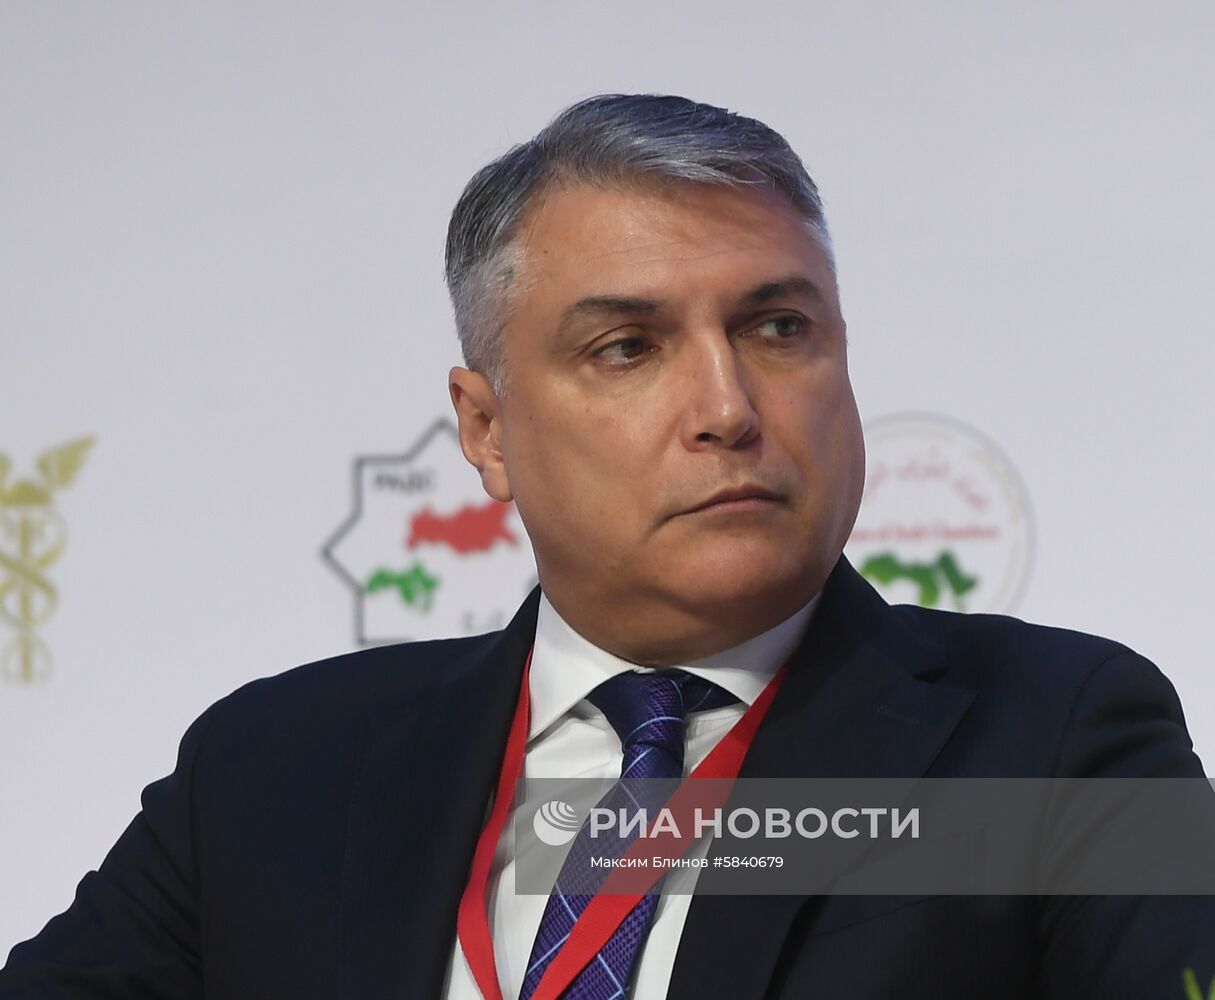 XII сессия Российско-арабского делового совета в Москве 